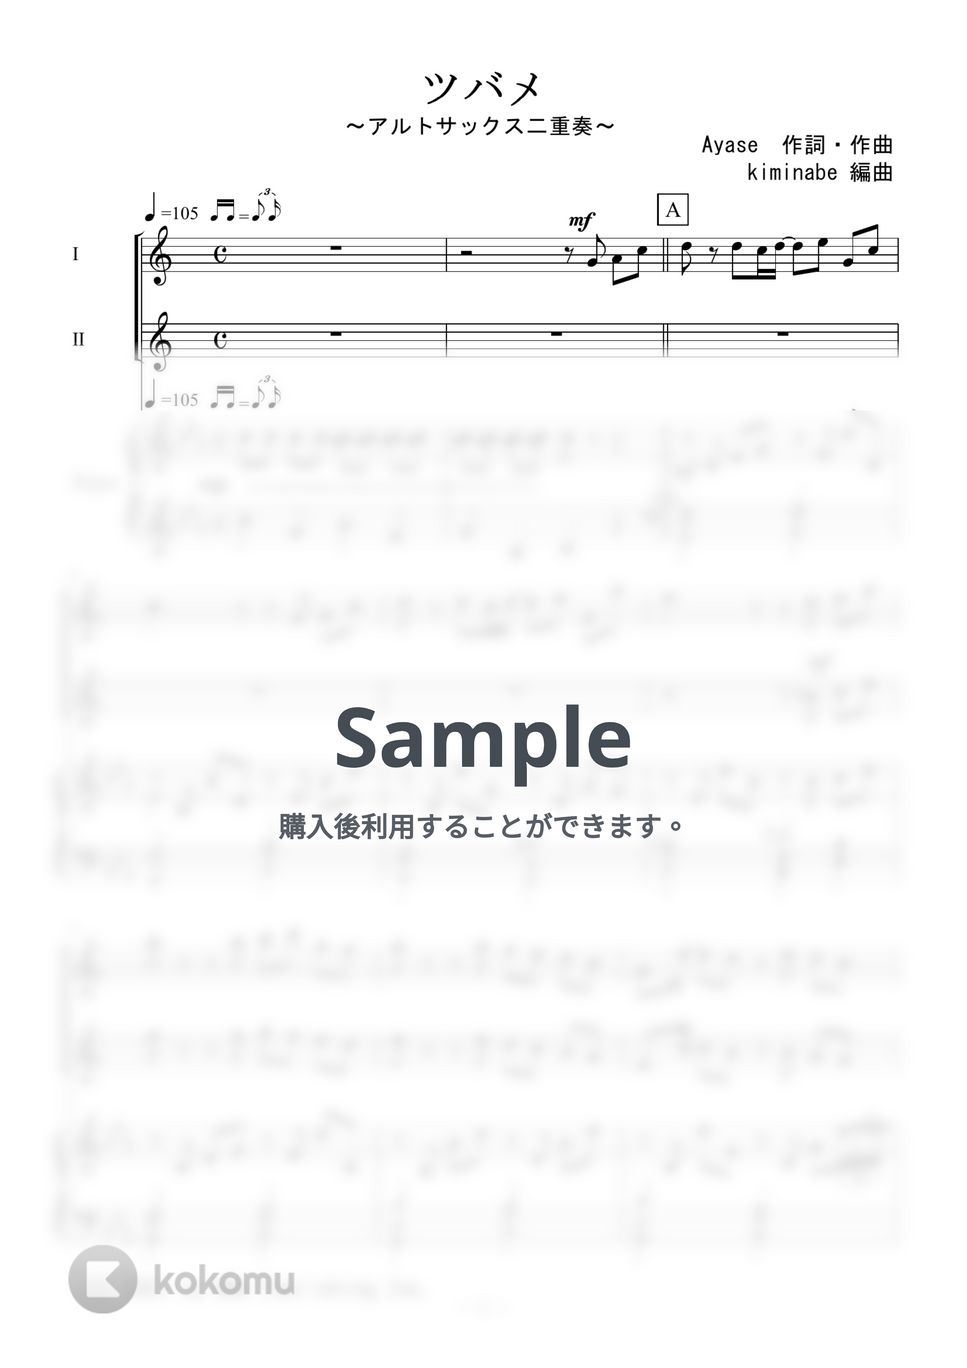 YOASOBI - ツバメ (アルトサックス二重奏) by kiminabe